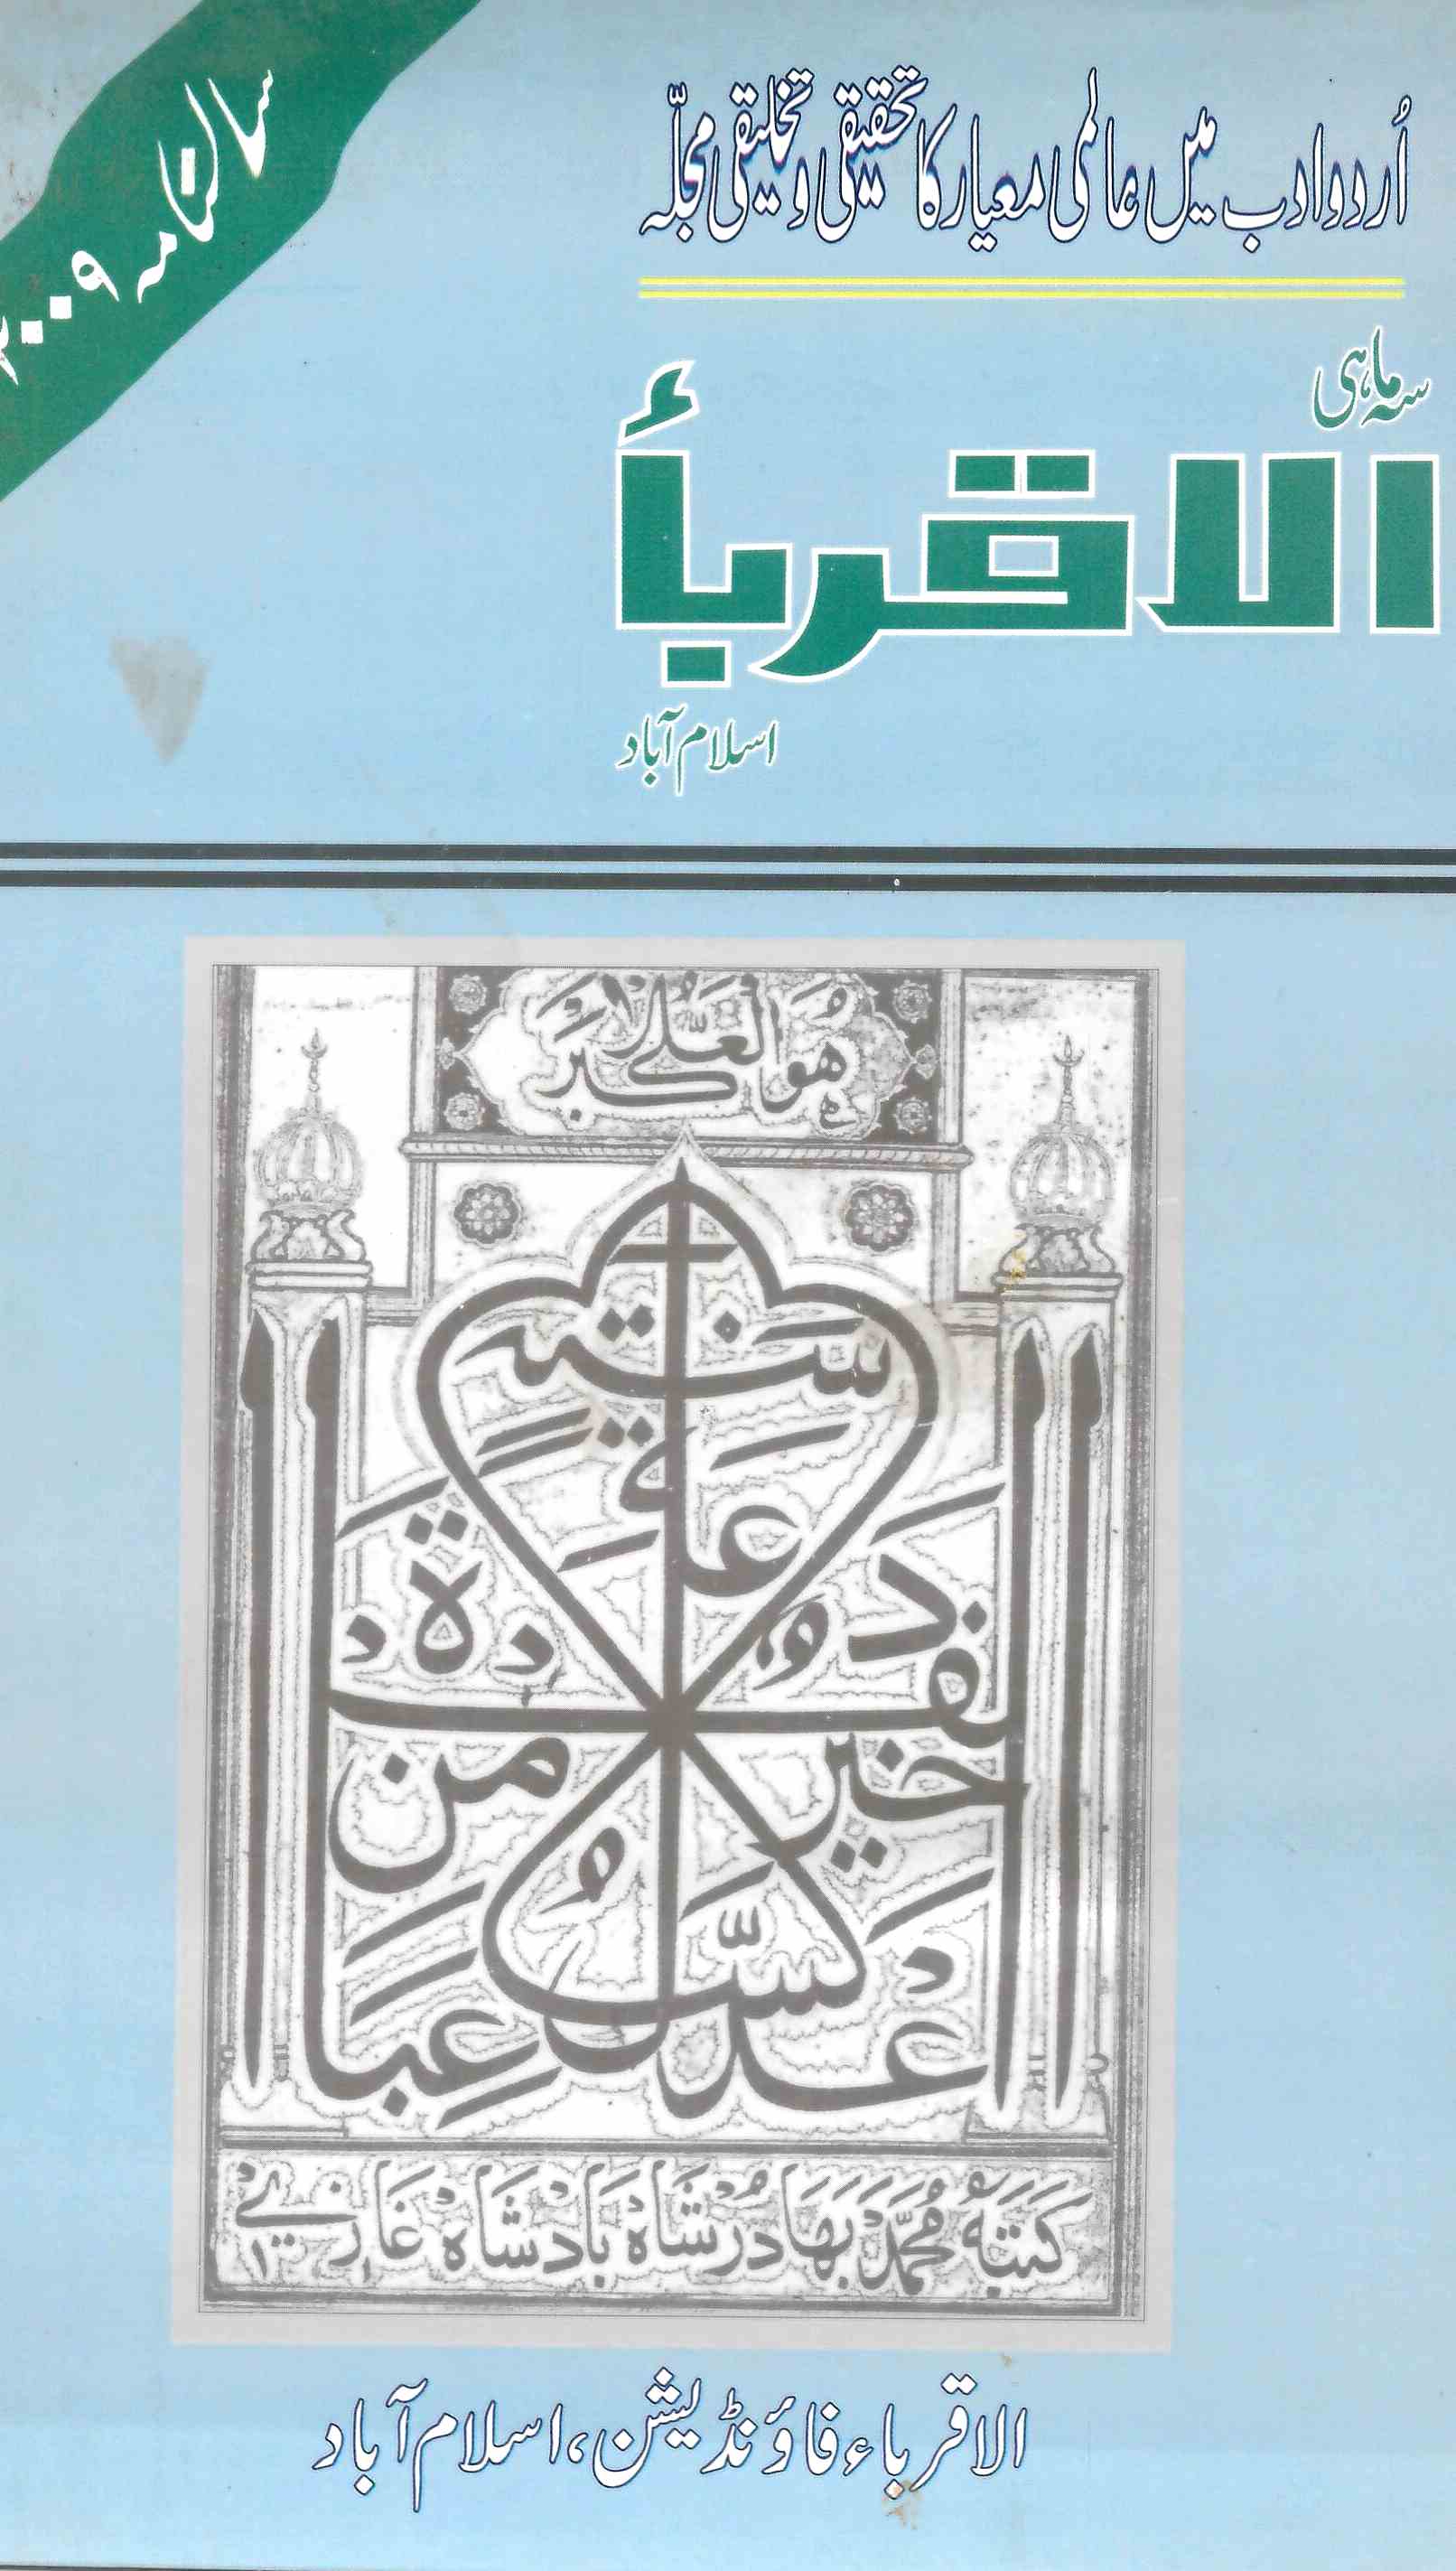 अल-अक़रबा, इस्लामाबाद- Magazine by अल-अक़रबा फ़ाउन्डेशन, इस्लामाबाद, सय्यद नासिरुद्दीन, सय्यद मंसूर आक़ील 